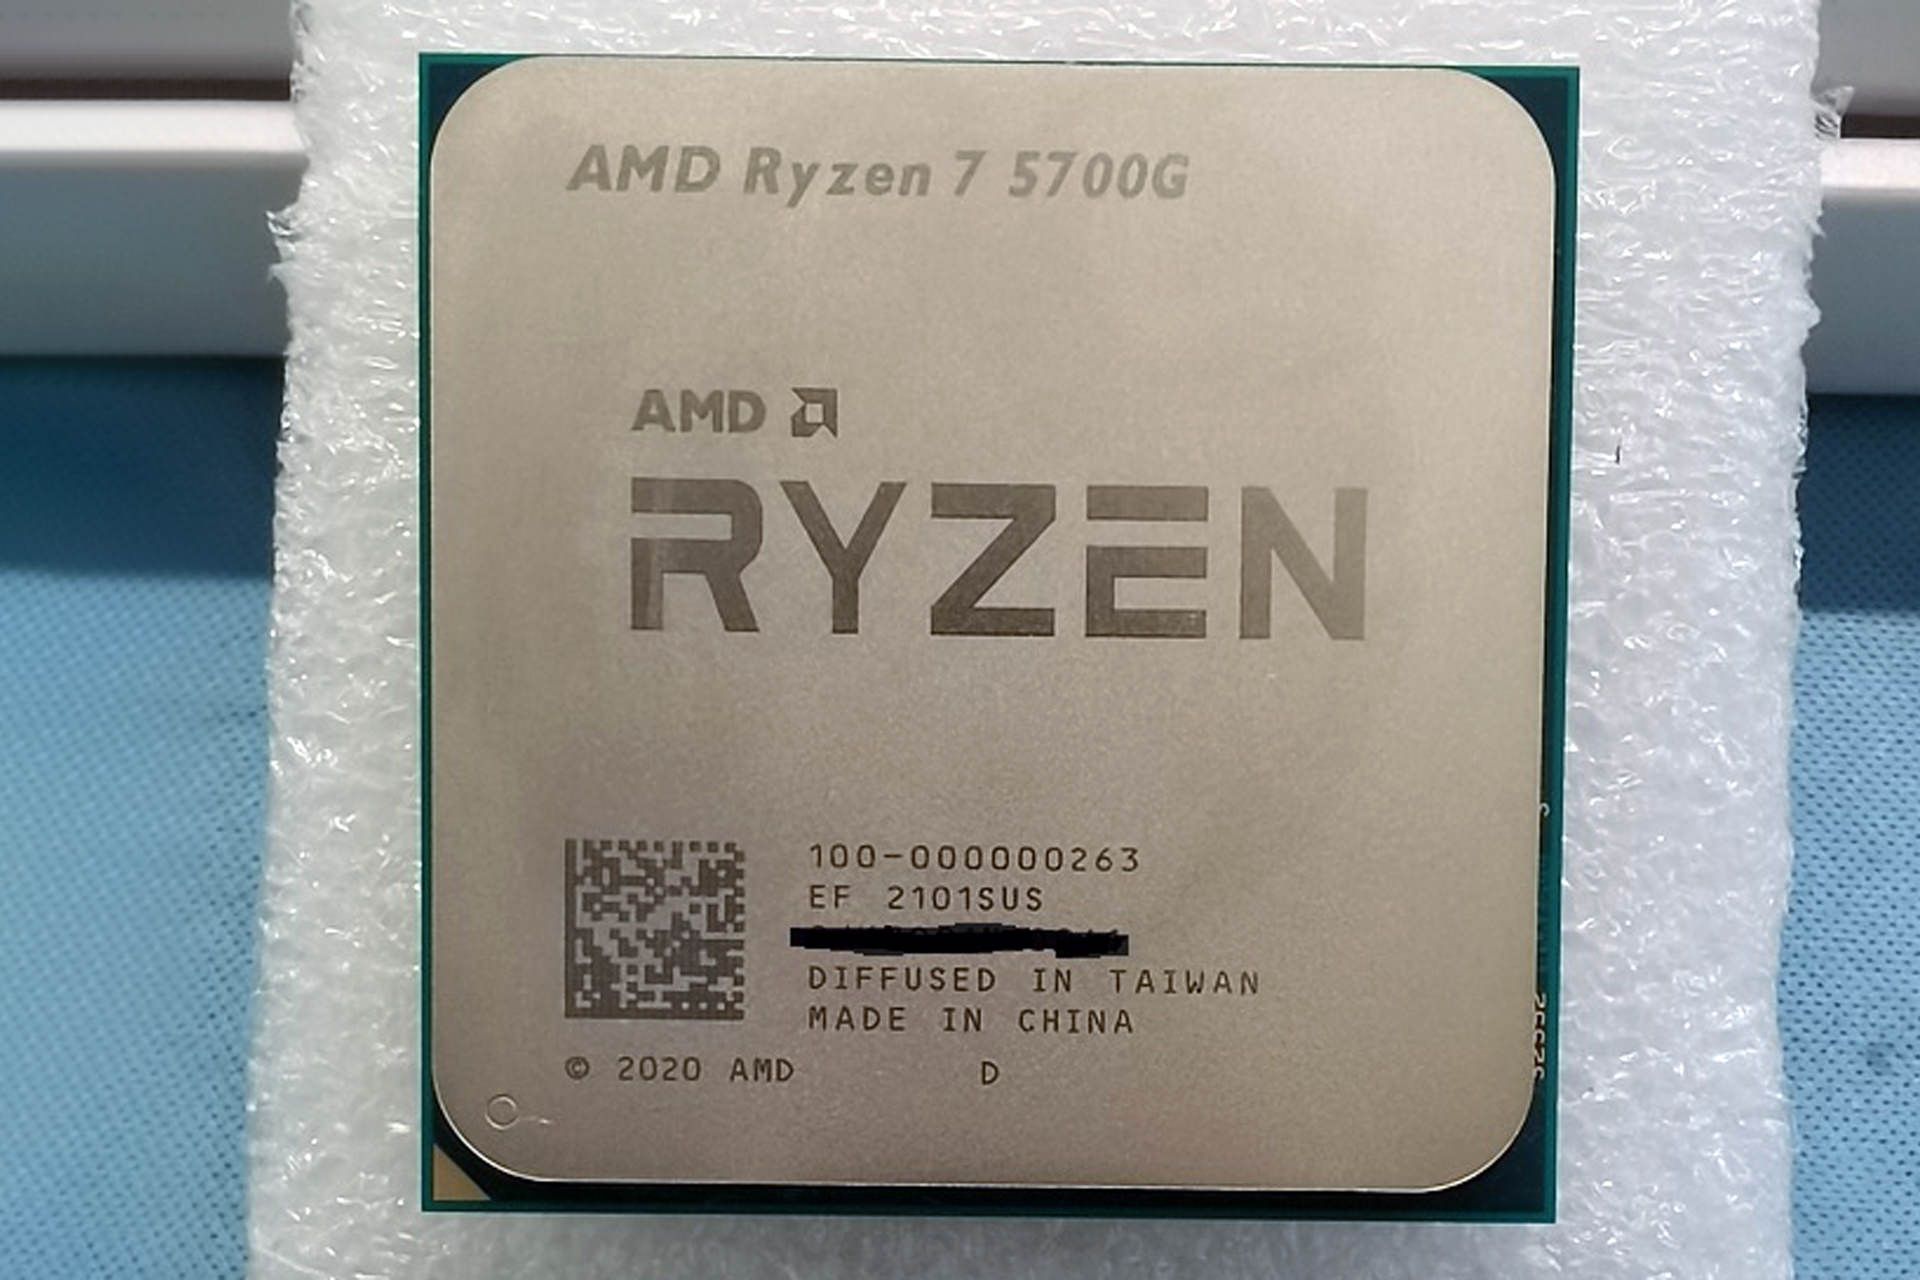 تصویر فاش شده پردازنده AMD Ryzen 7 5700G از نمای جلو در دنیای واقعی